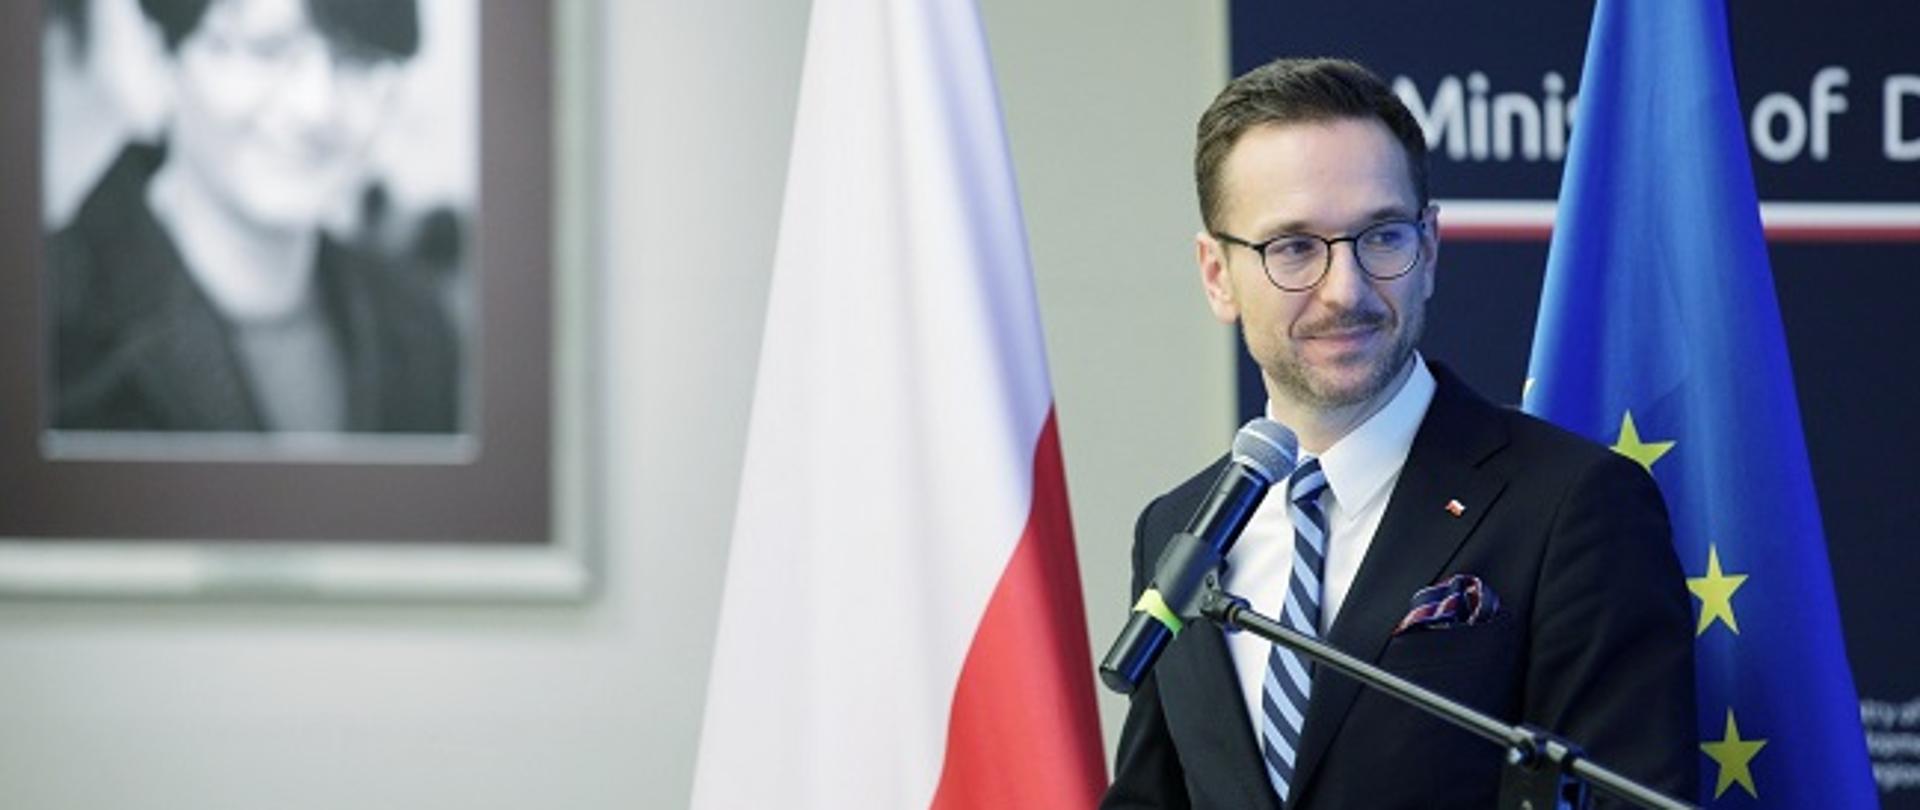 Wiceminister Waldemar Buda stoi przy mównicy z mikrofonem. W tle flagi Polski i UE